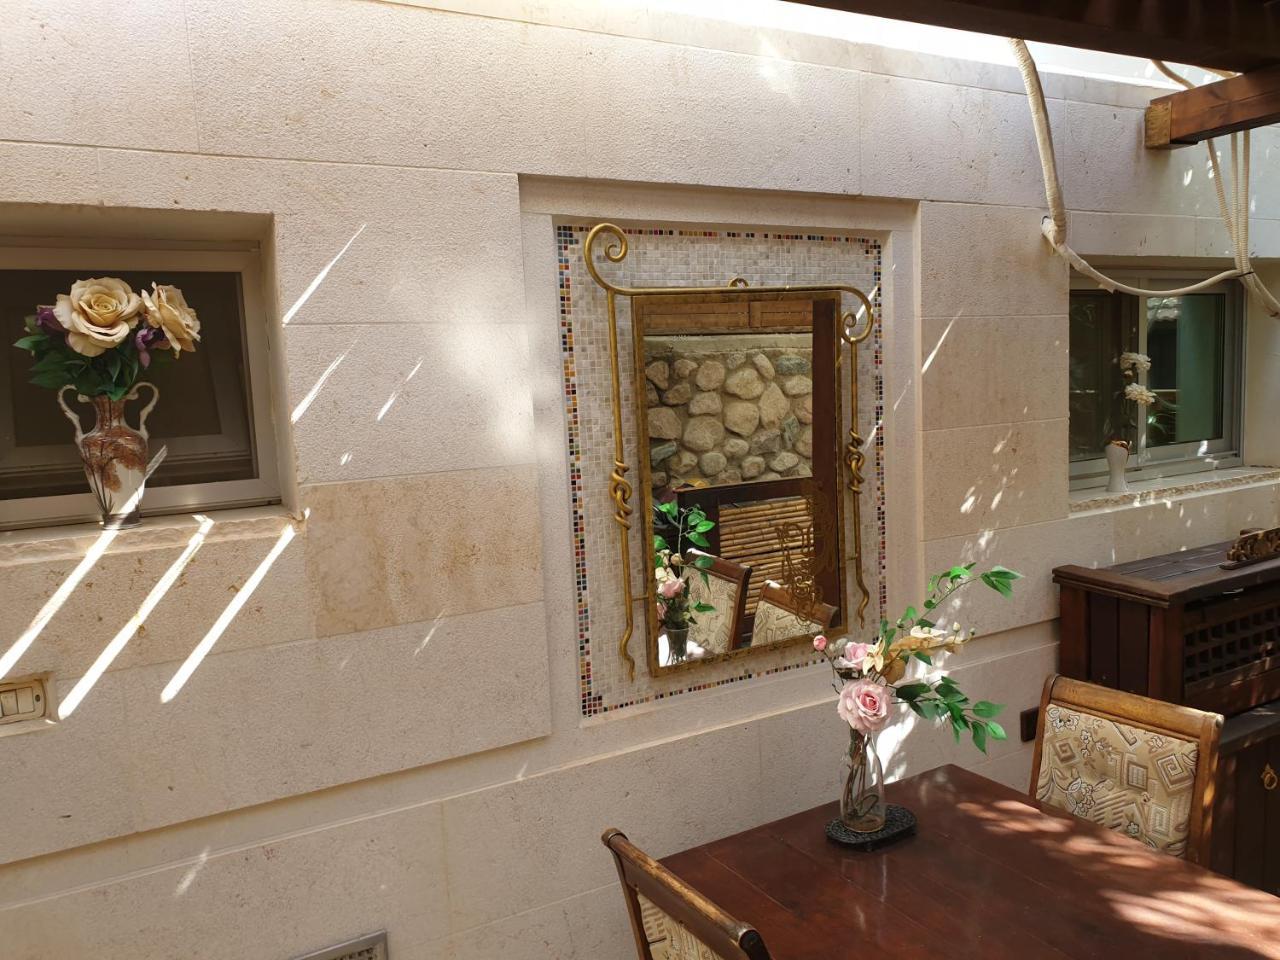 Thai Villa Eilat - וילה תאי אילת Exterior photo